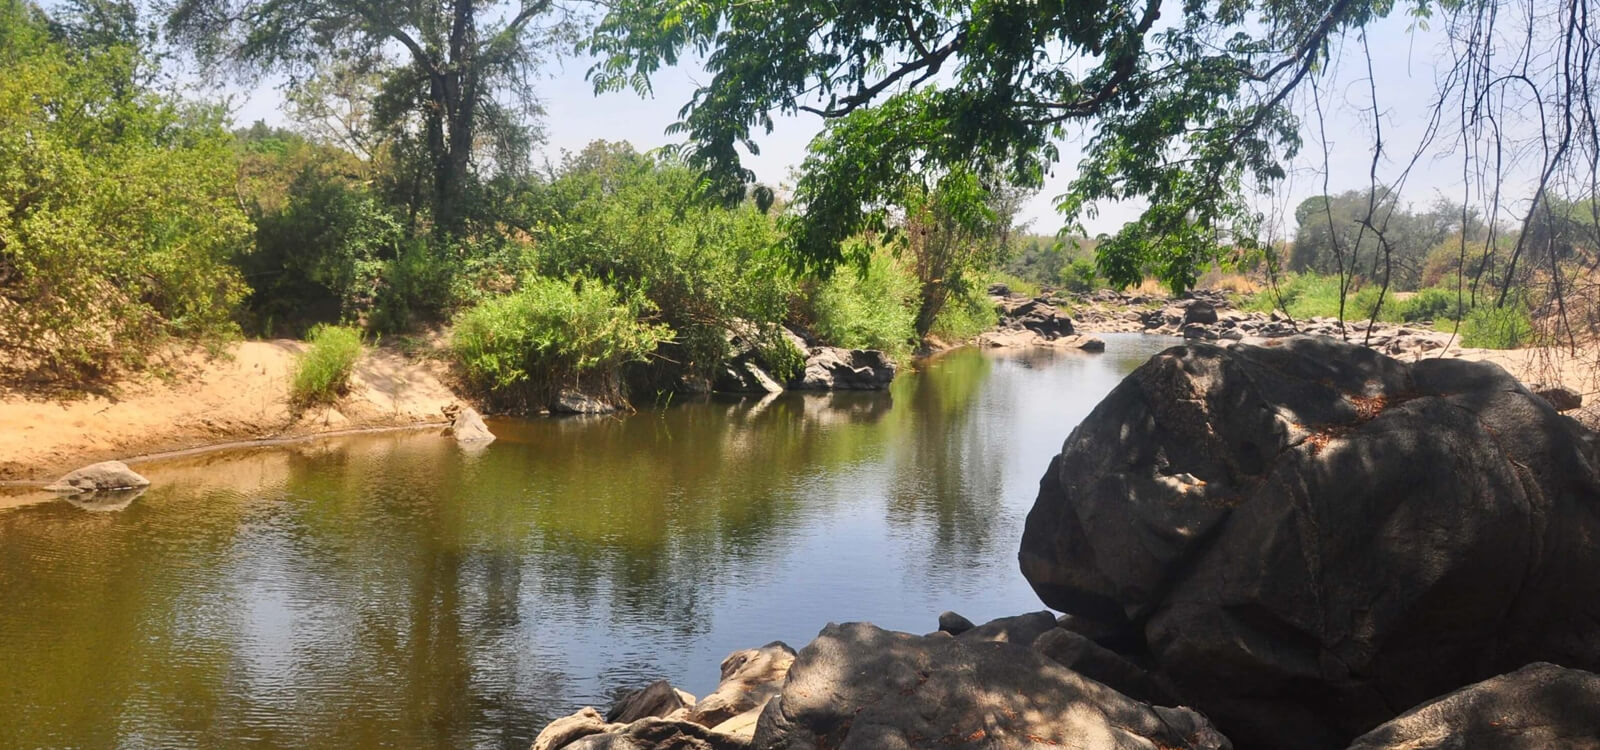 River near Malawi Safari Lodge